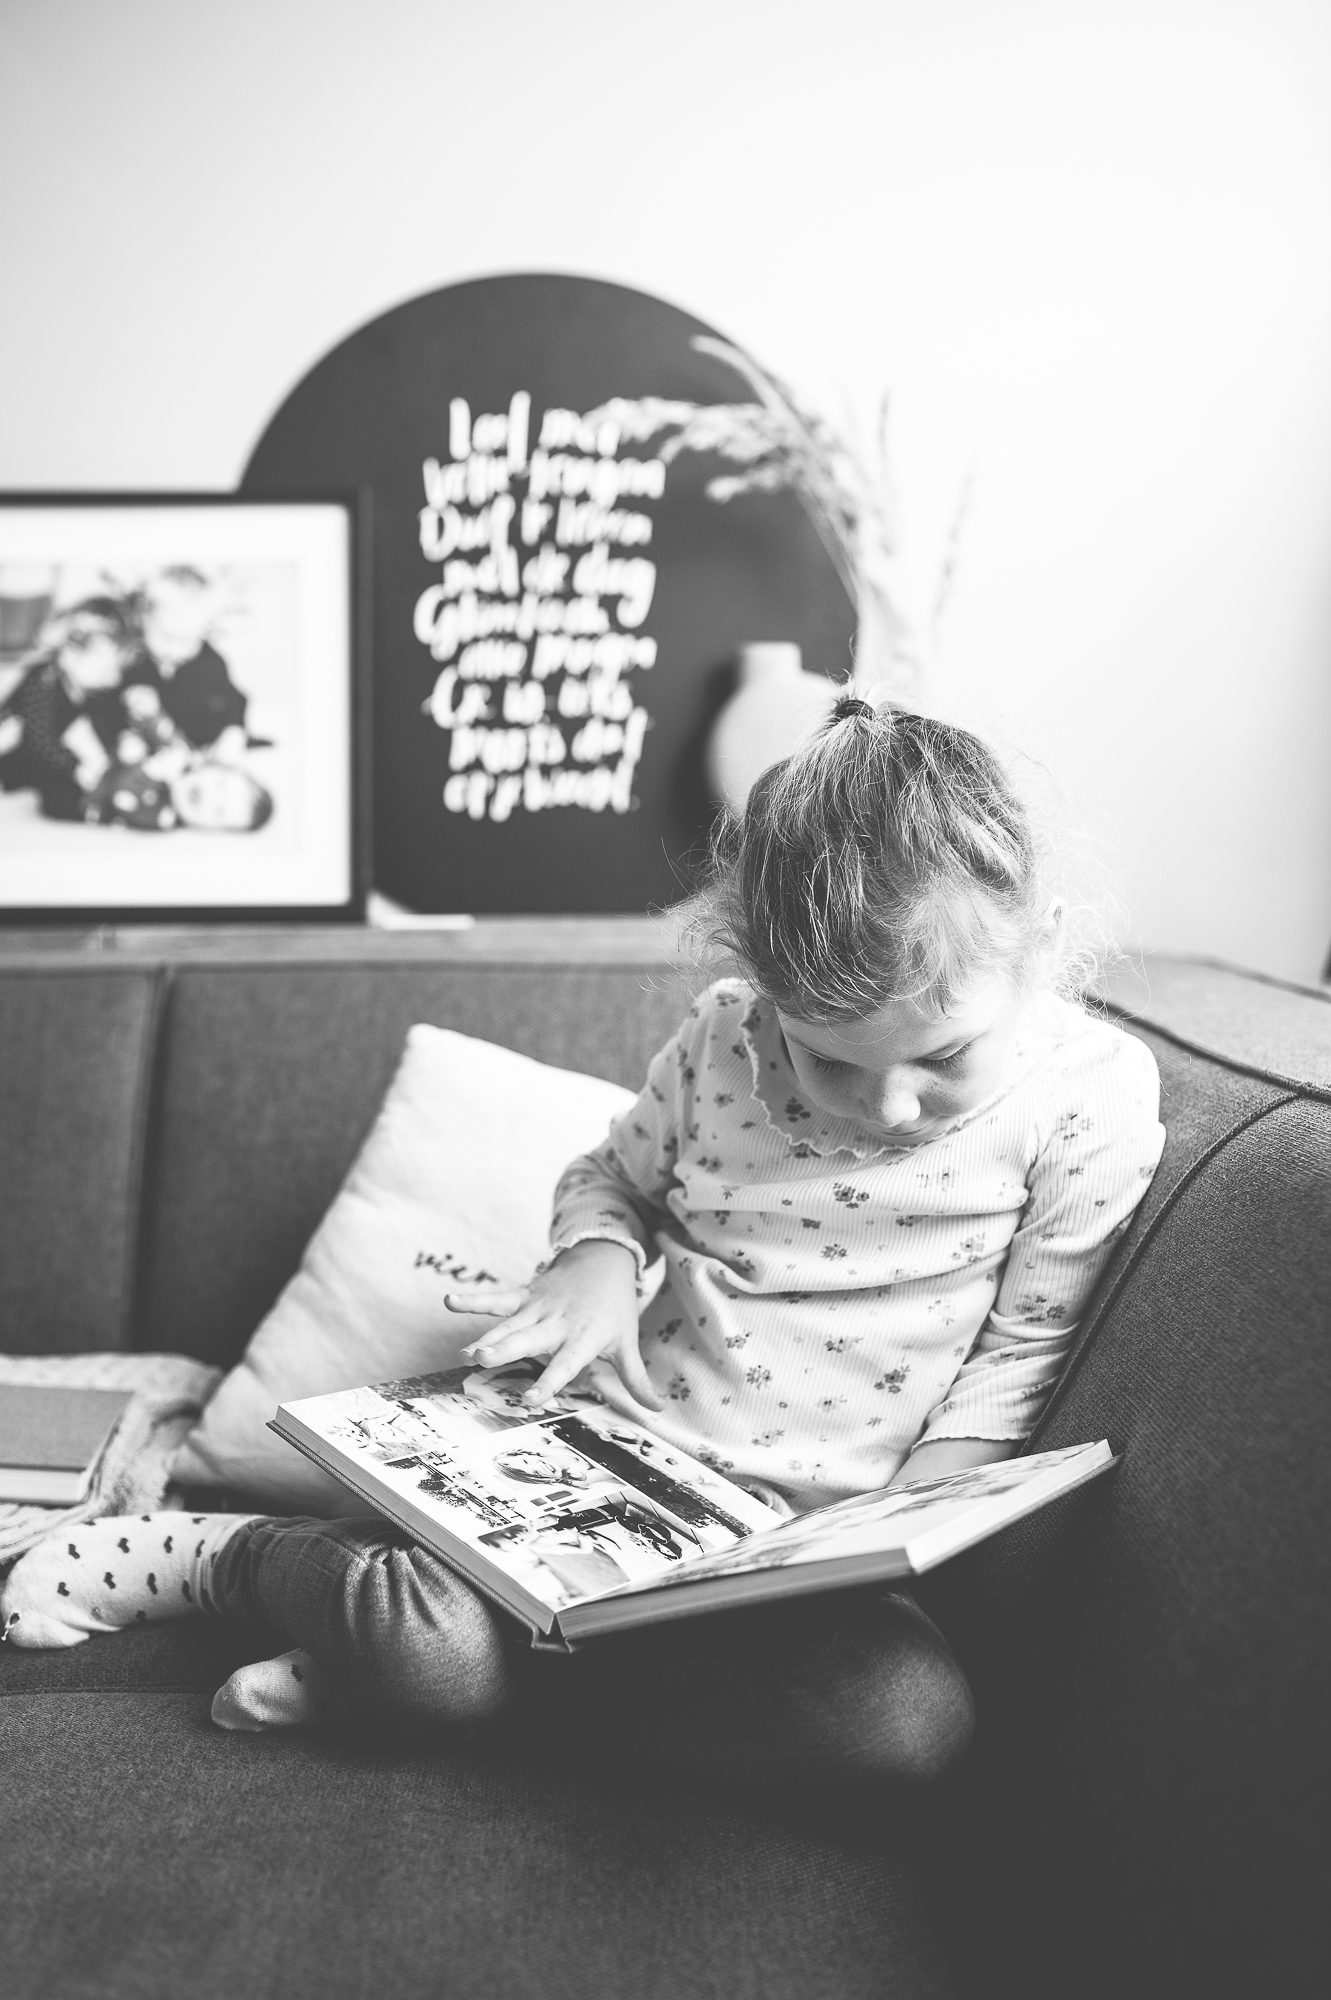 Meisje van 7 jaar die op de bank rustig kijkt naar de fotoboeken van het gezin.